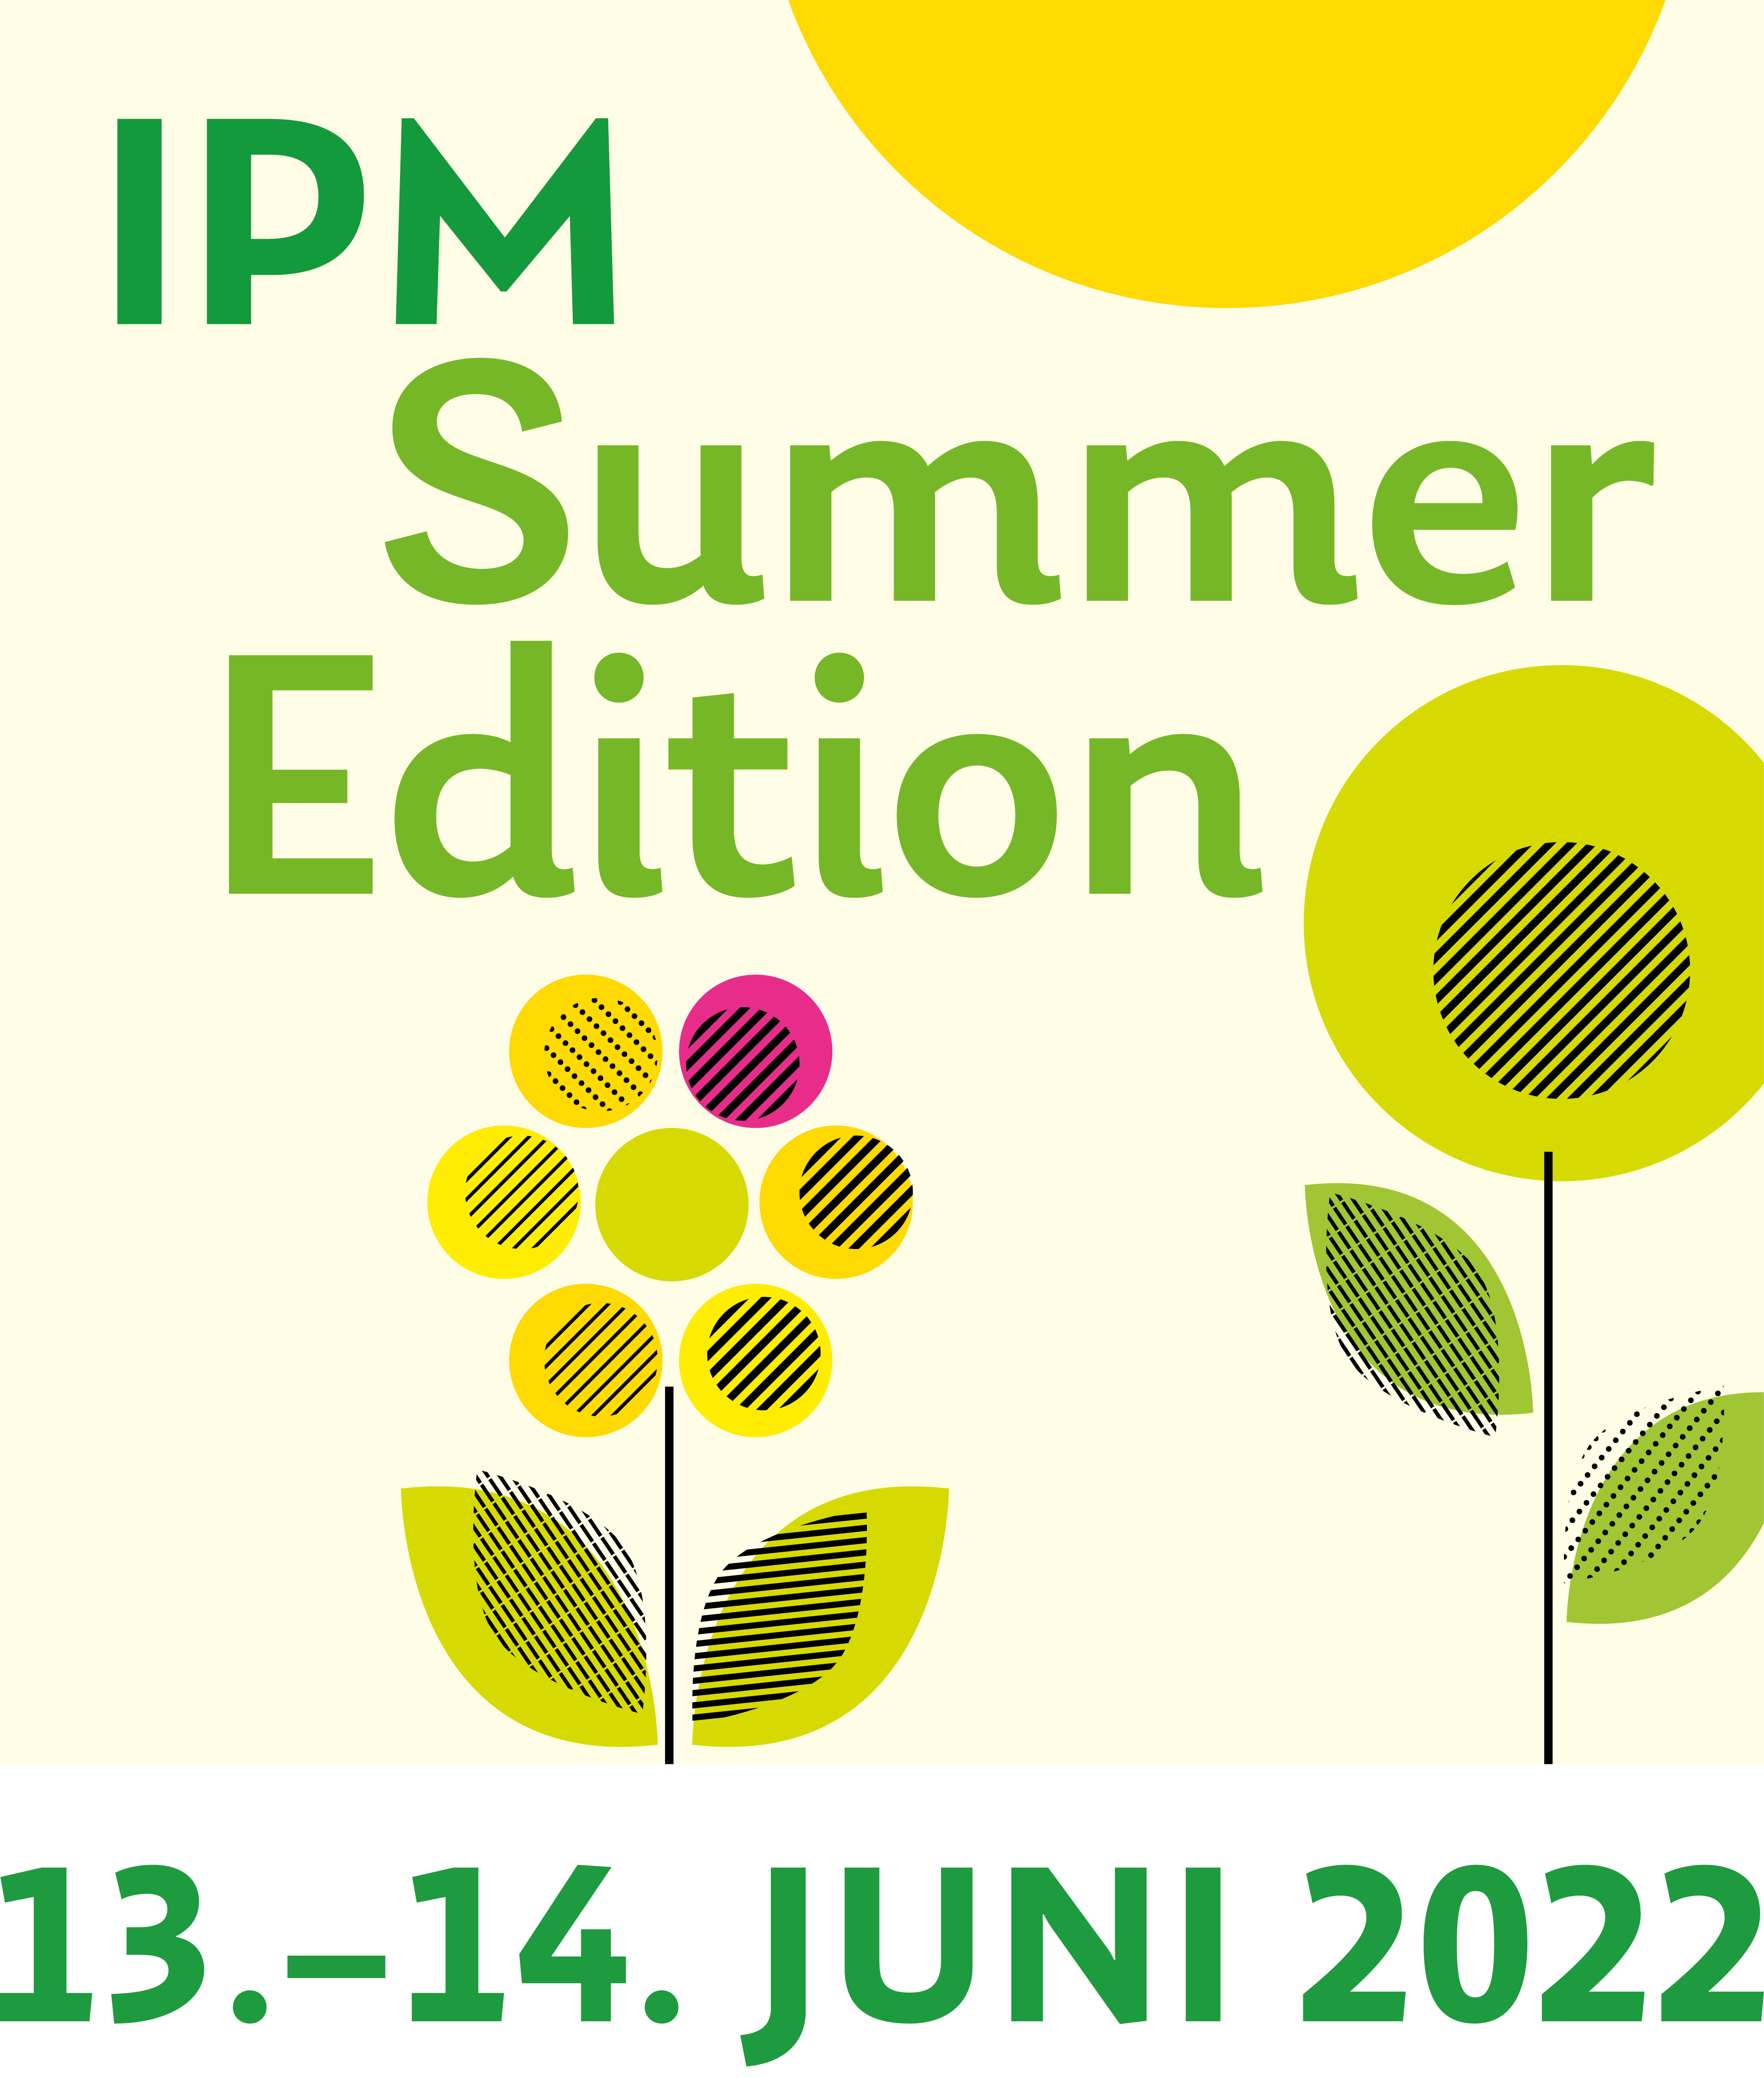 IPM Summer Edition 2022 mit Datum